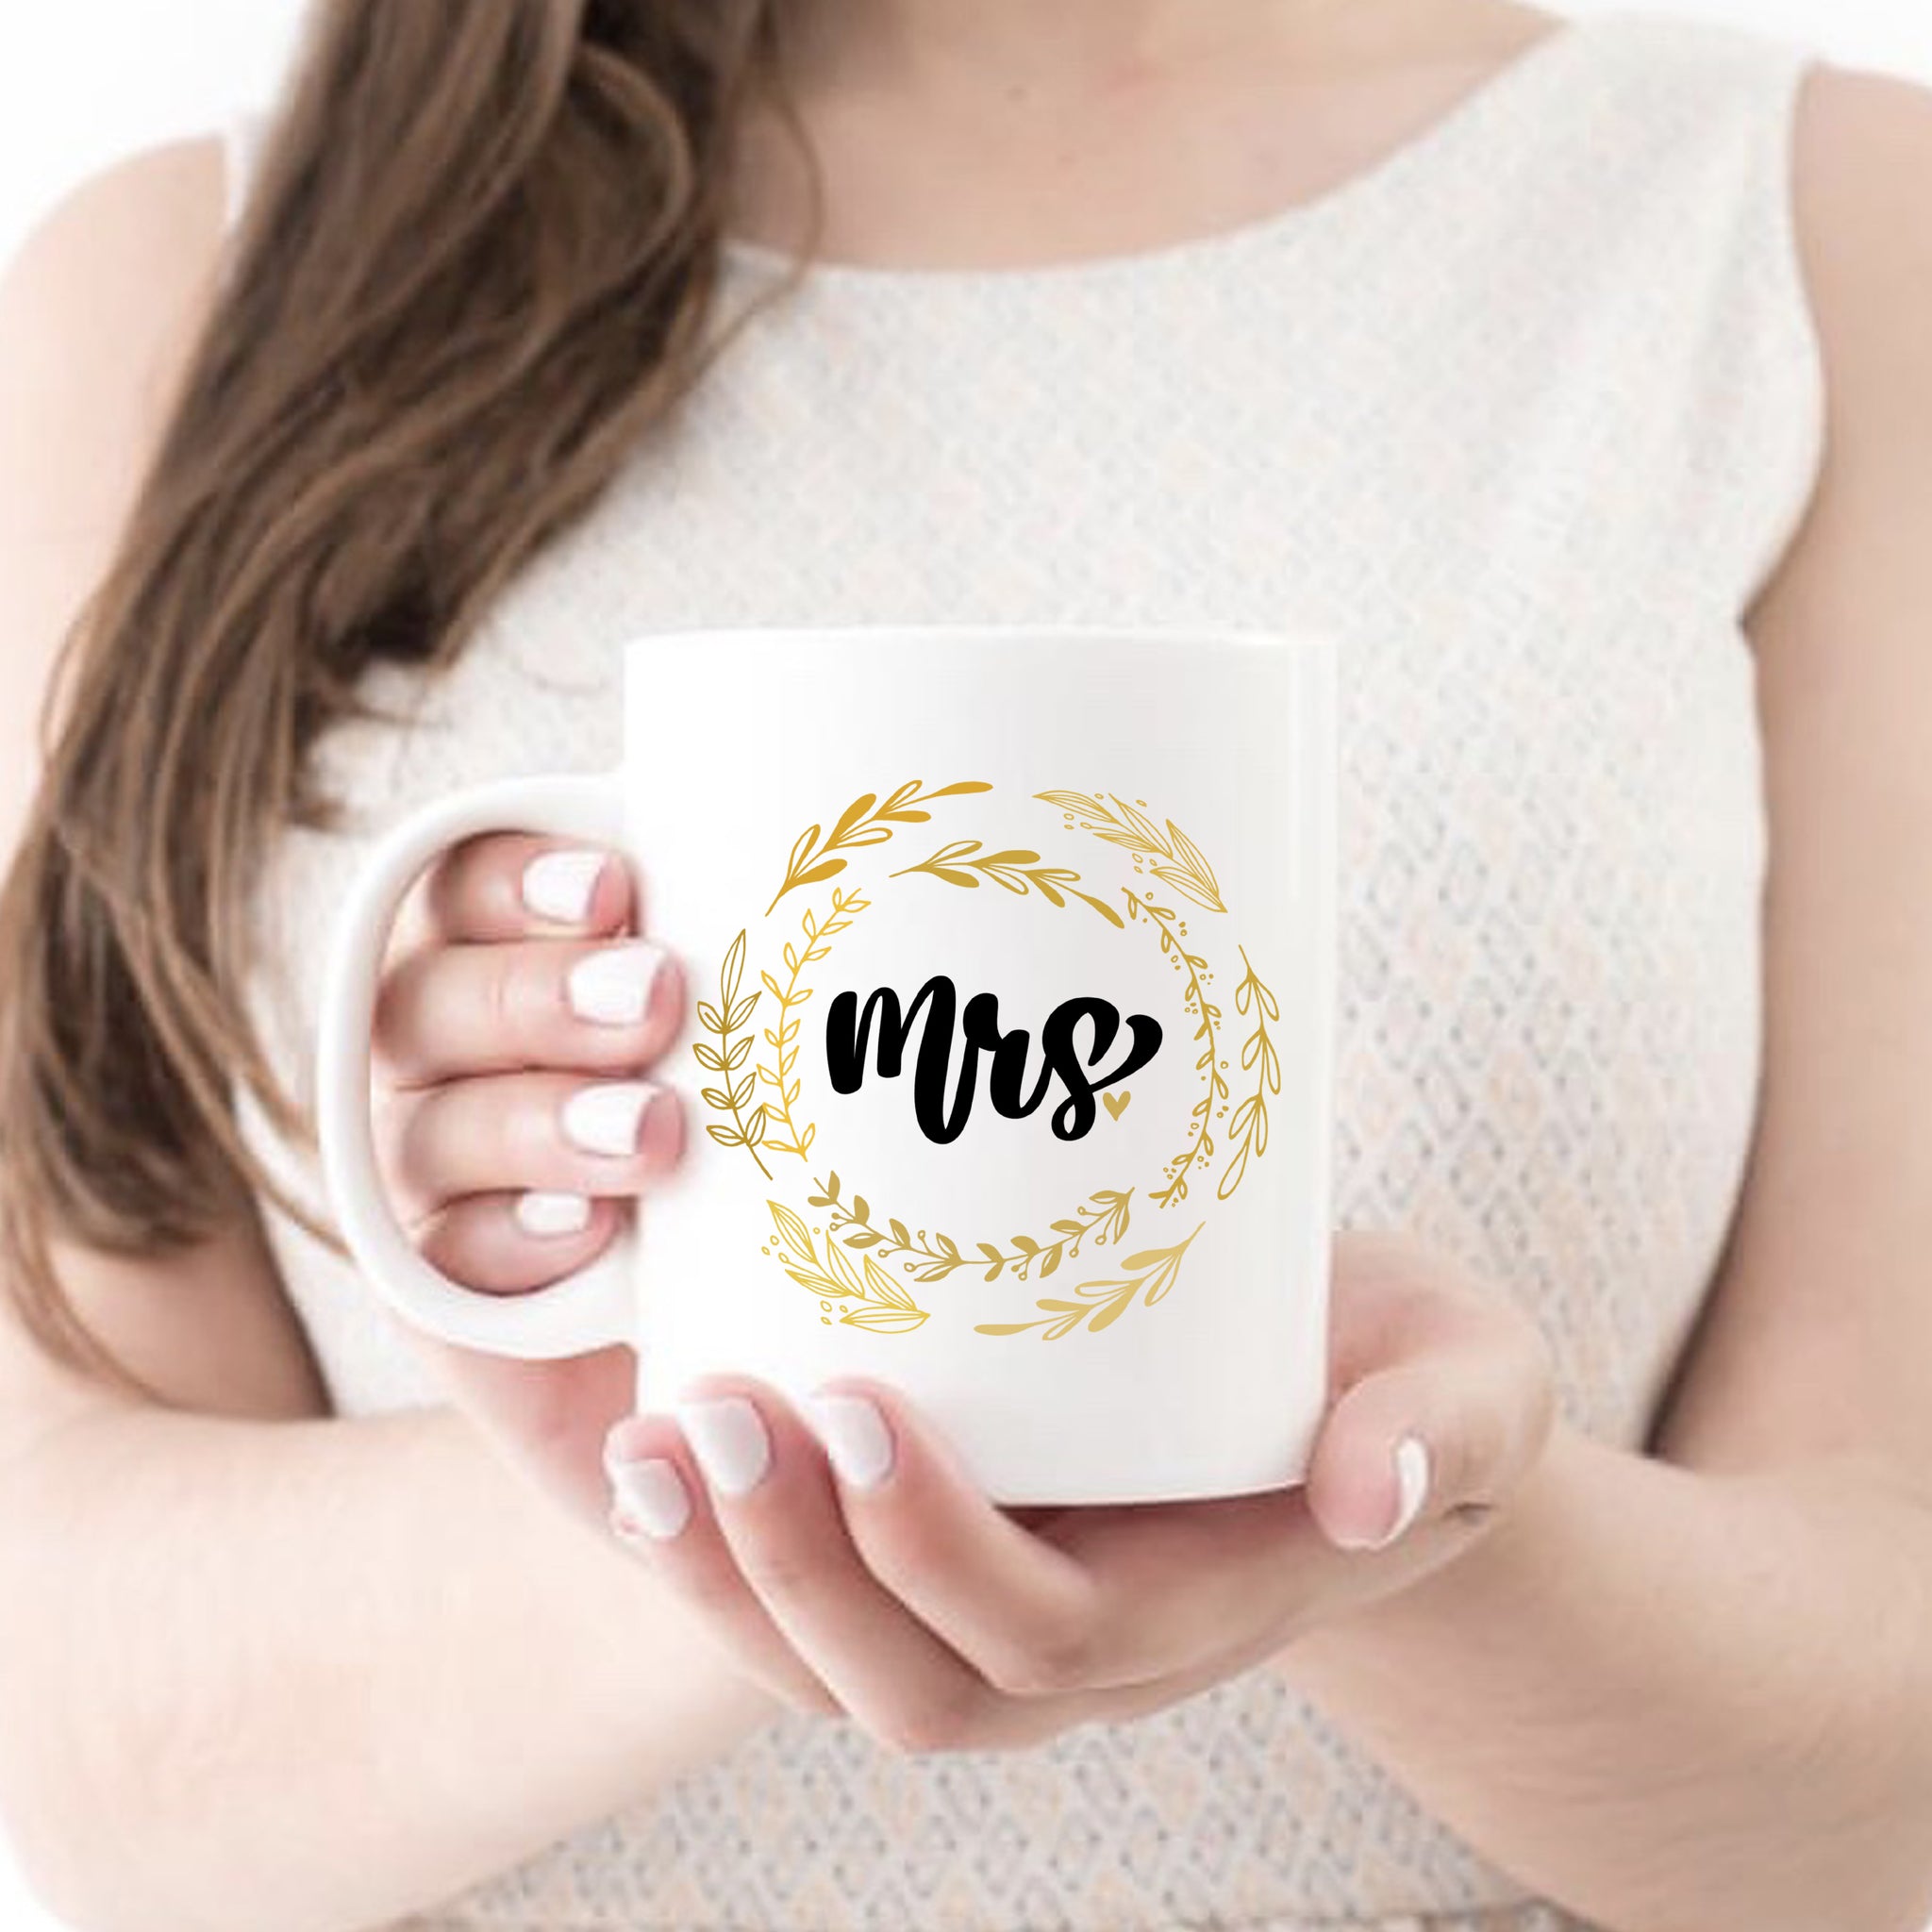 Mug - Mrs.